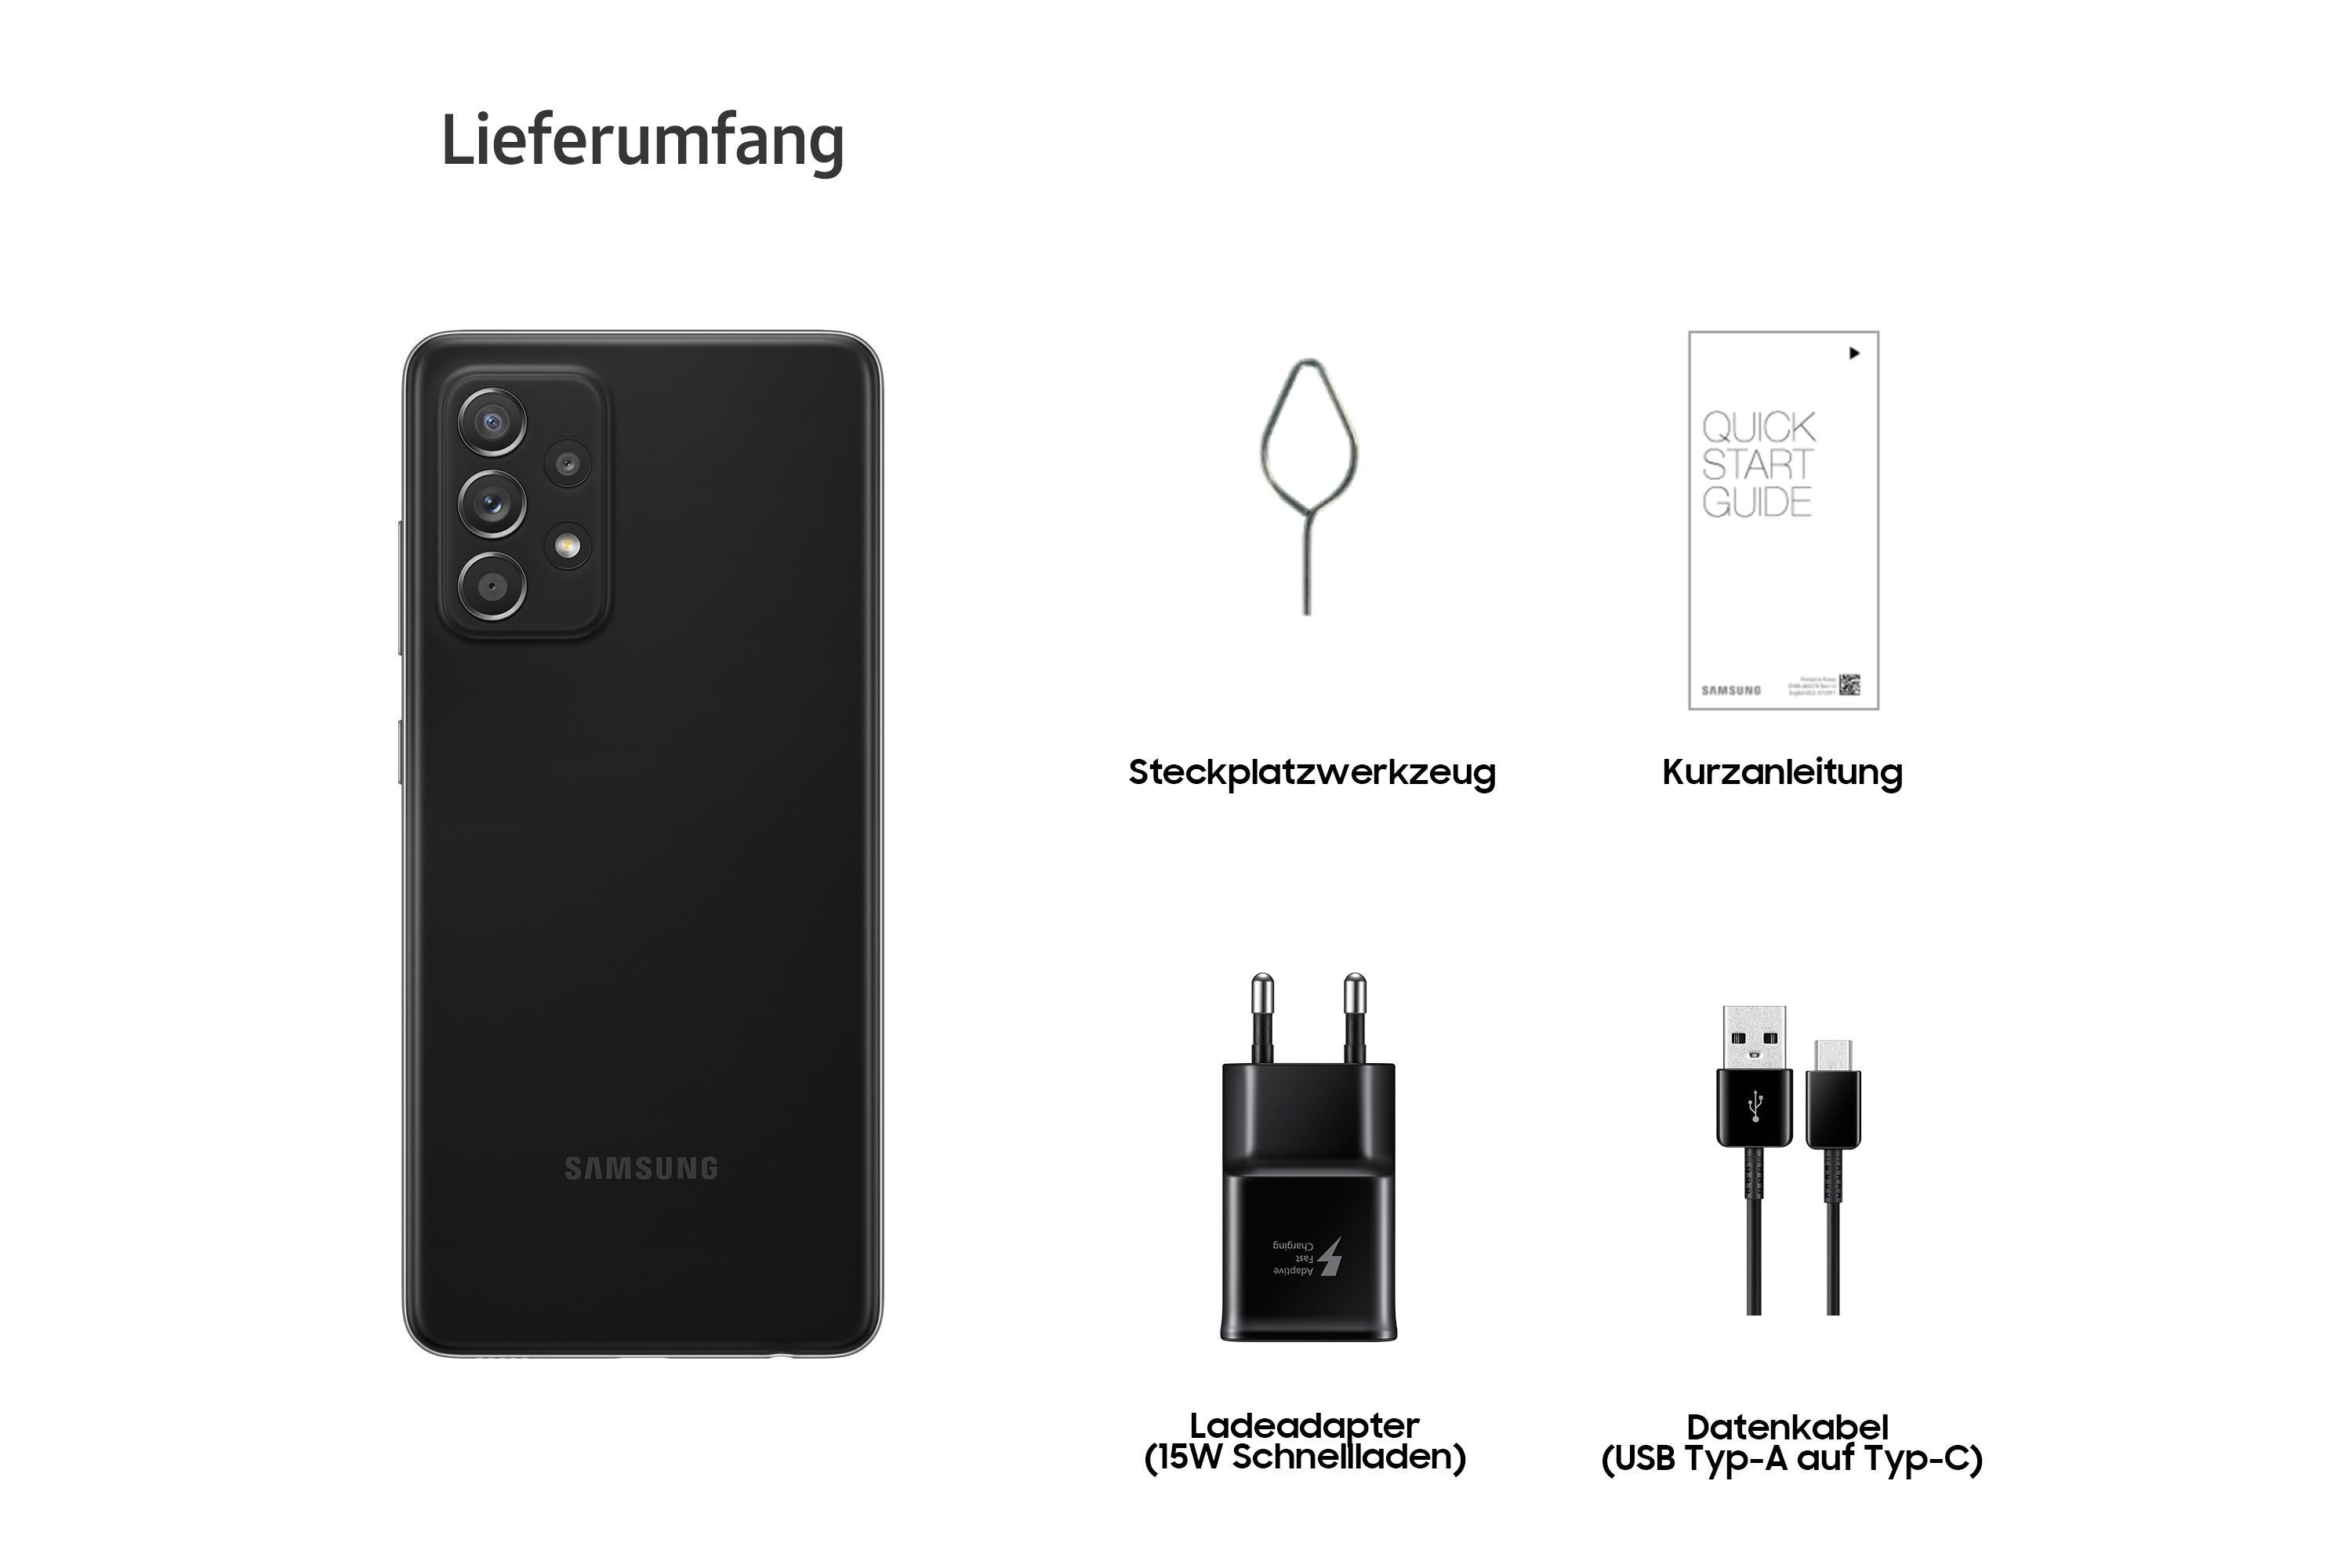 SAMSUNG Galaxy A52 GB 256 Awesome Dual 5G SIM Black